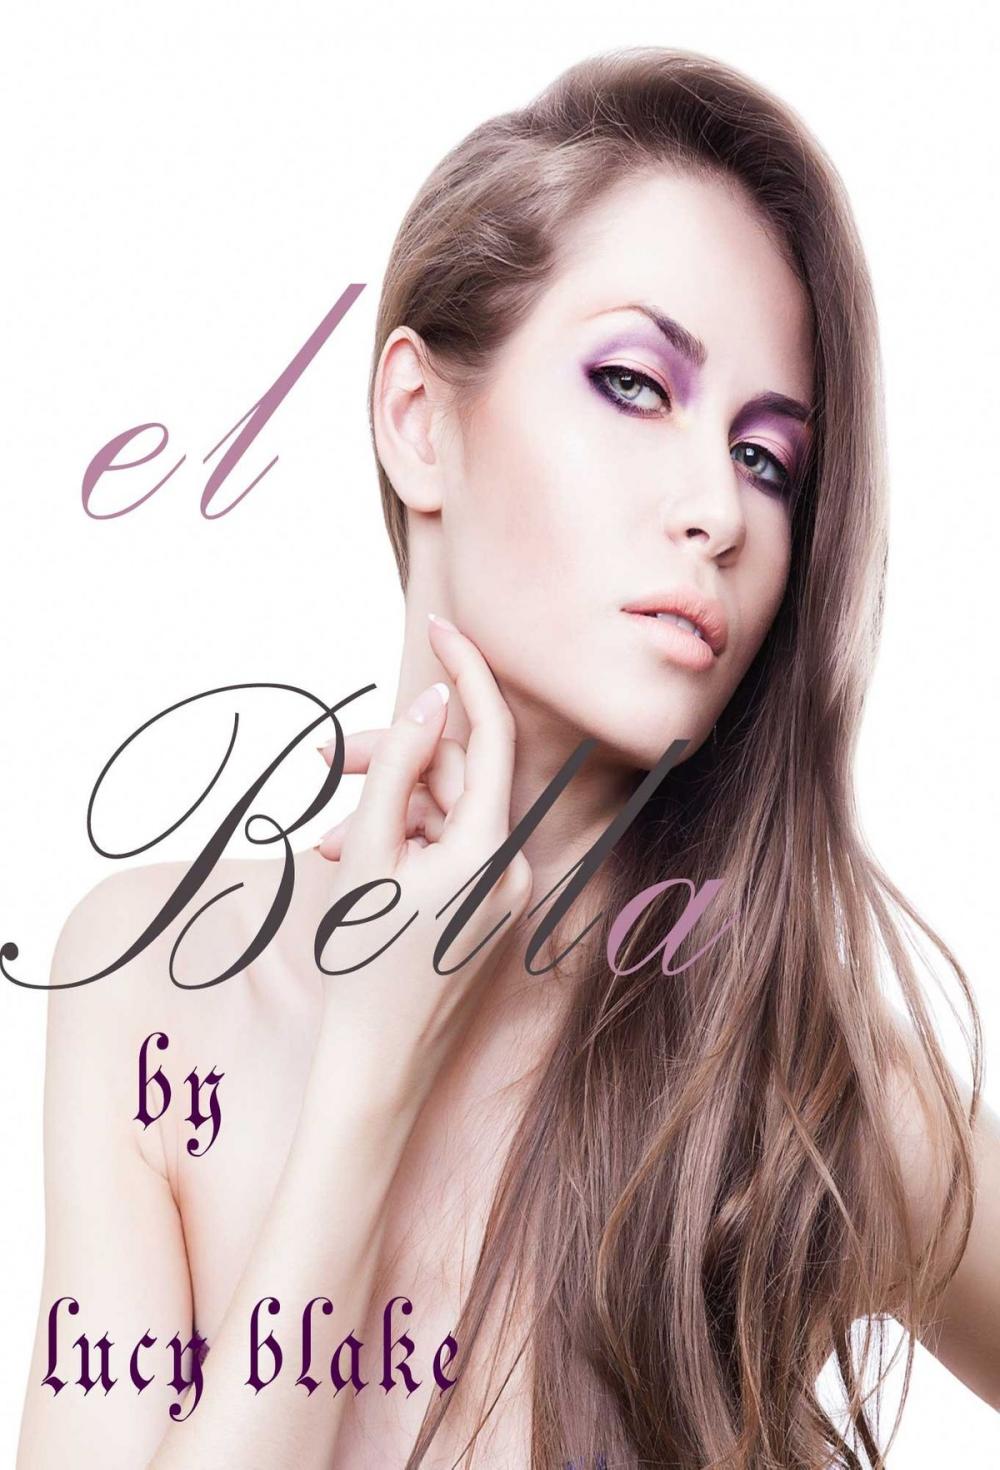 Big bigCover of EL BELLA